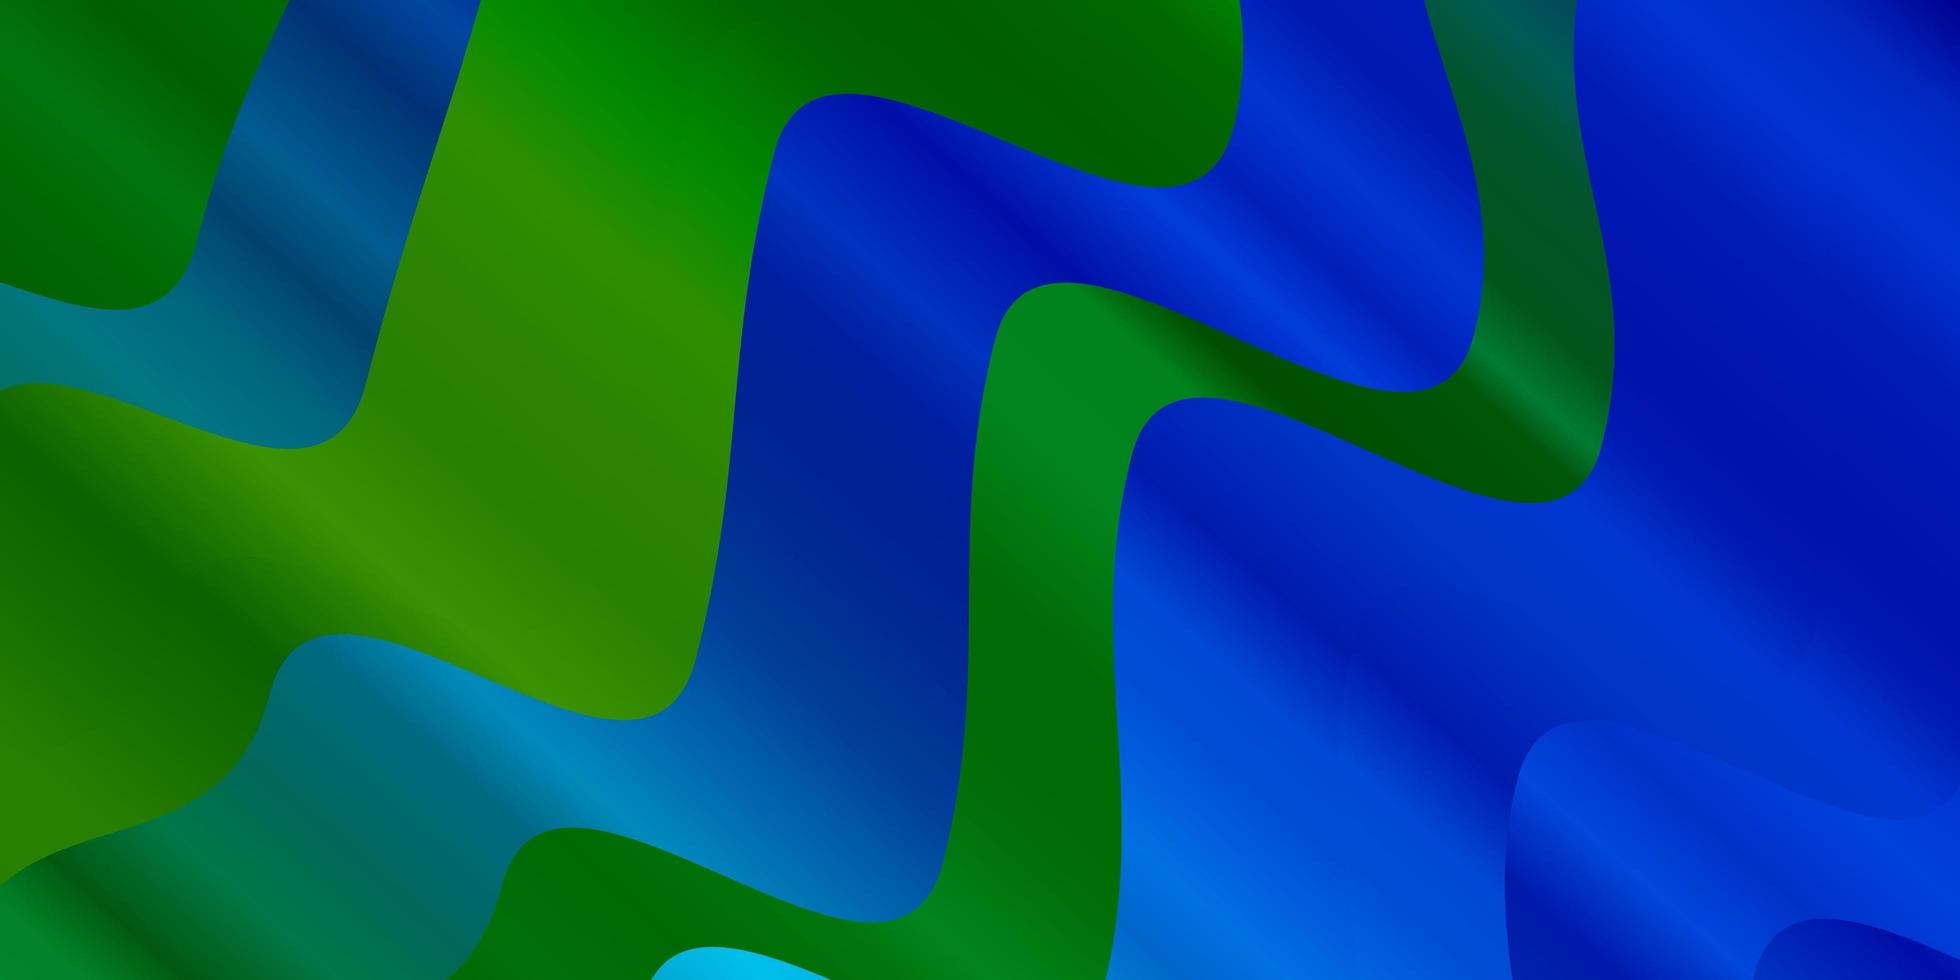 padrão de vetor azul e verde claro com curvas.